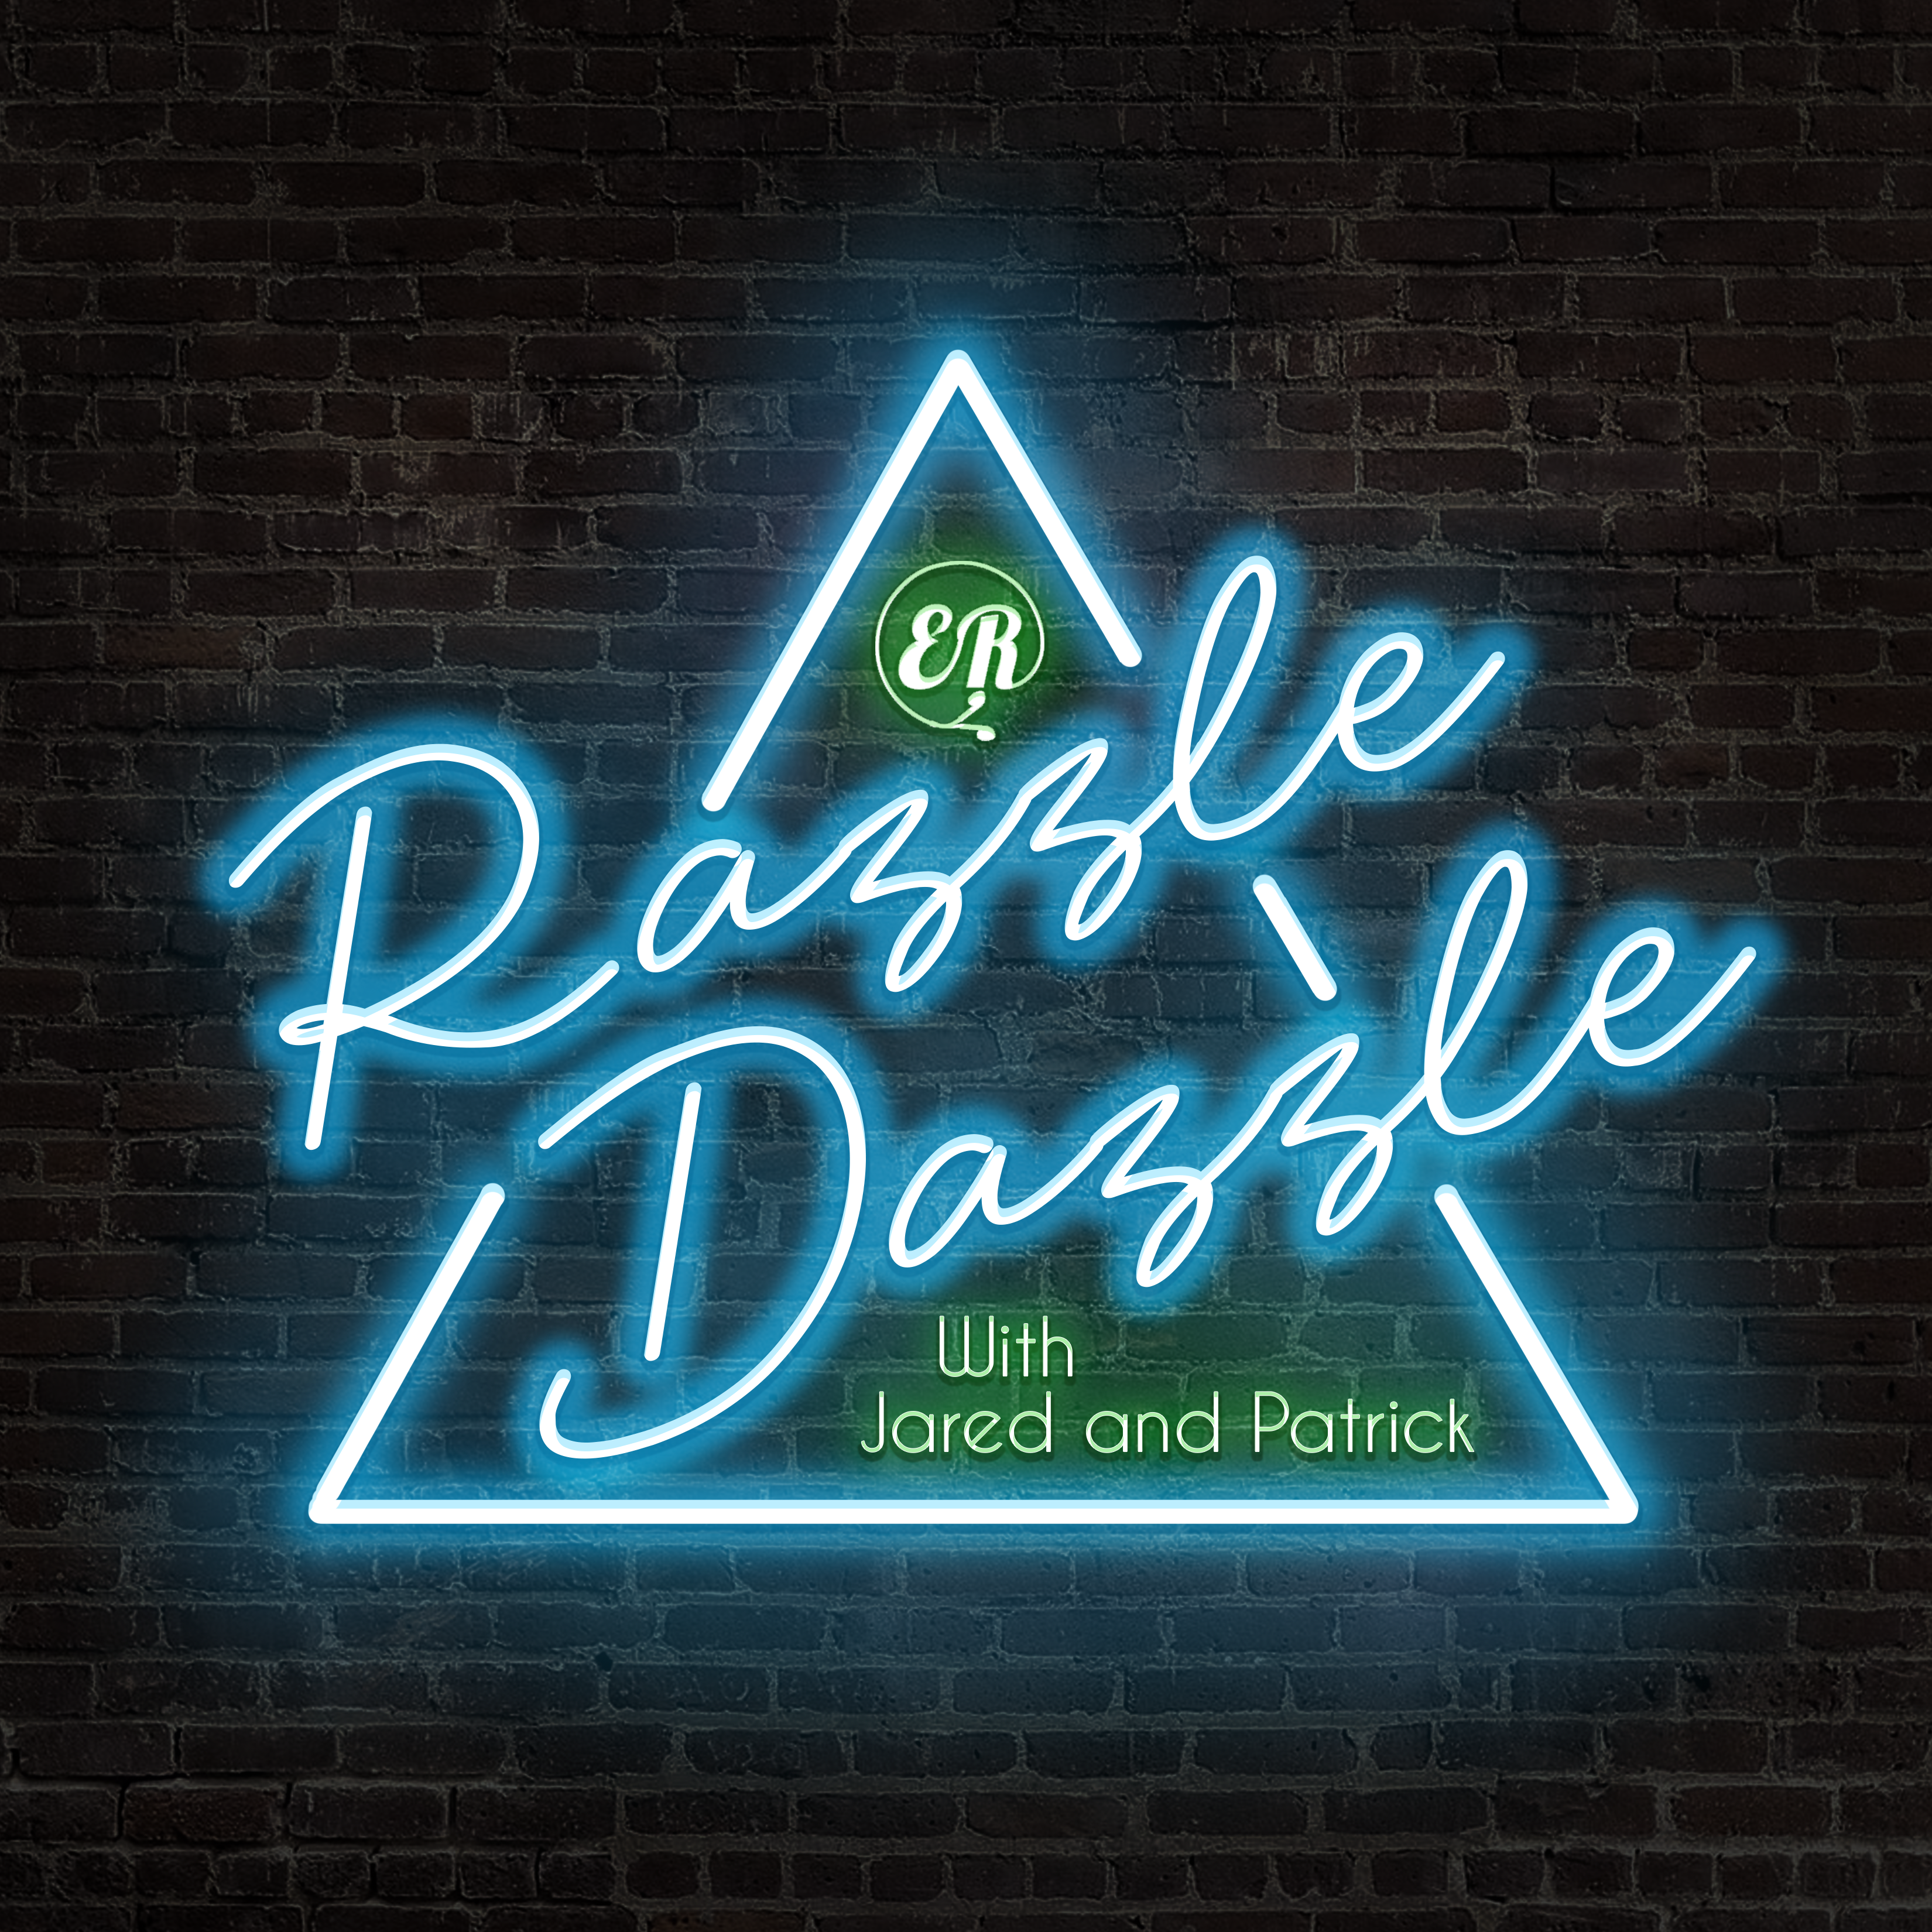 Art for Razzle Dazzle Promo by Razzle Dazzle